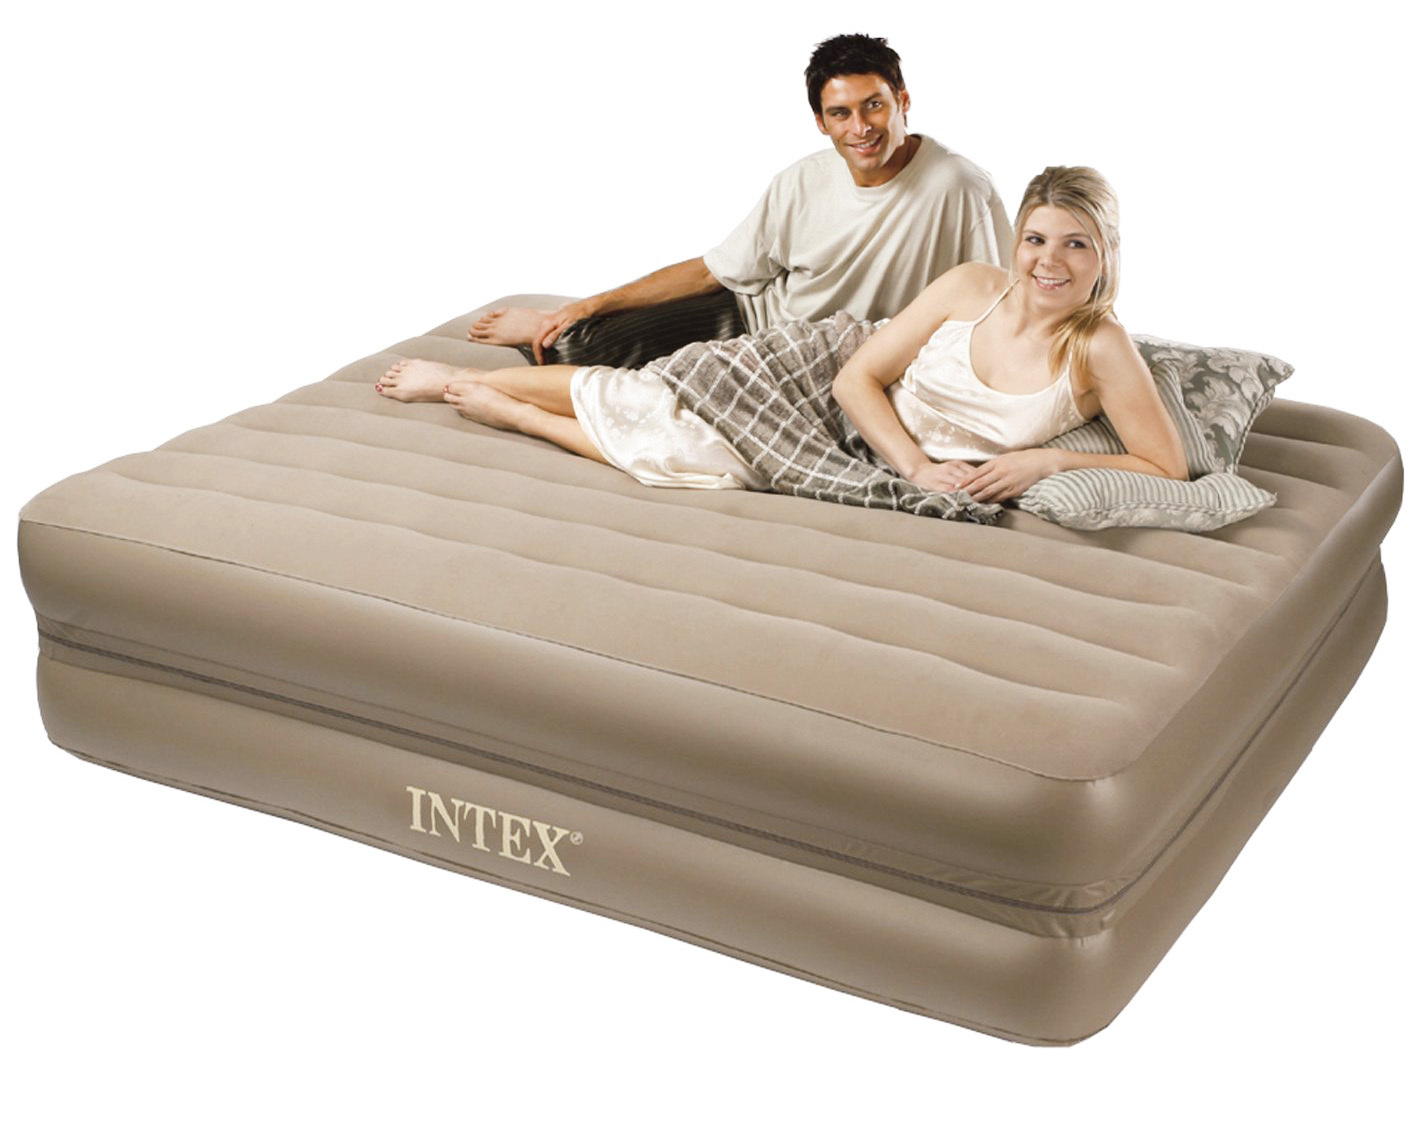 intex queen size air mattress size